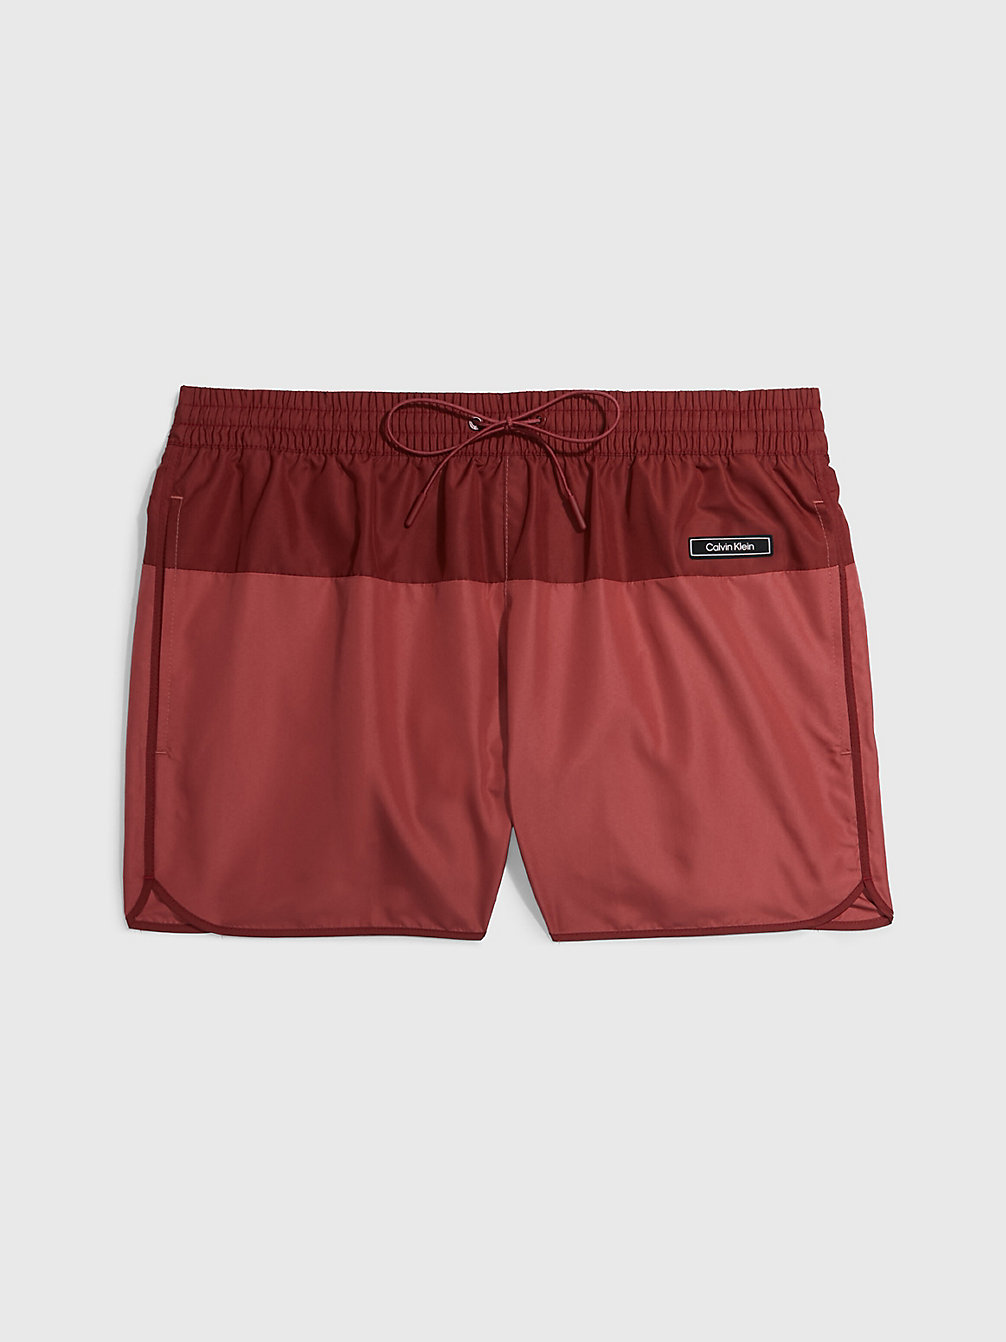 ANTIQUE RED Short Runner Swim Shorts - Core Solids undefined men Calvin Klein